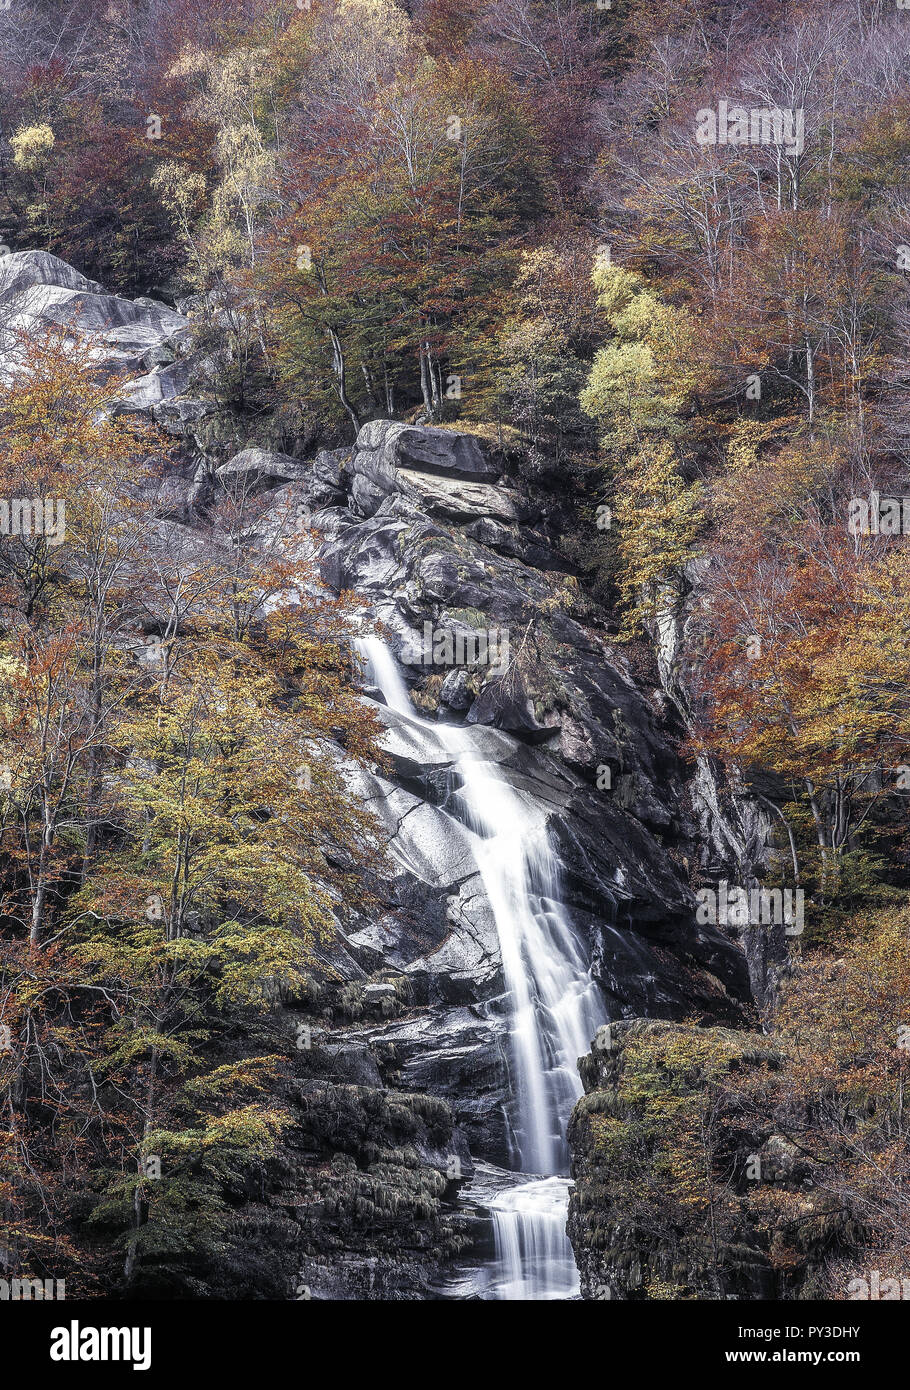 Wasserfall in herbstlichem Laubwald, Tessin, Schweiz Foto Stock